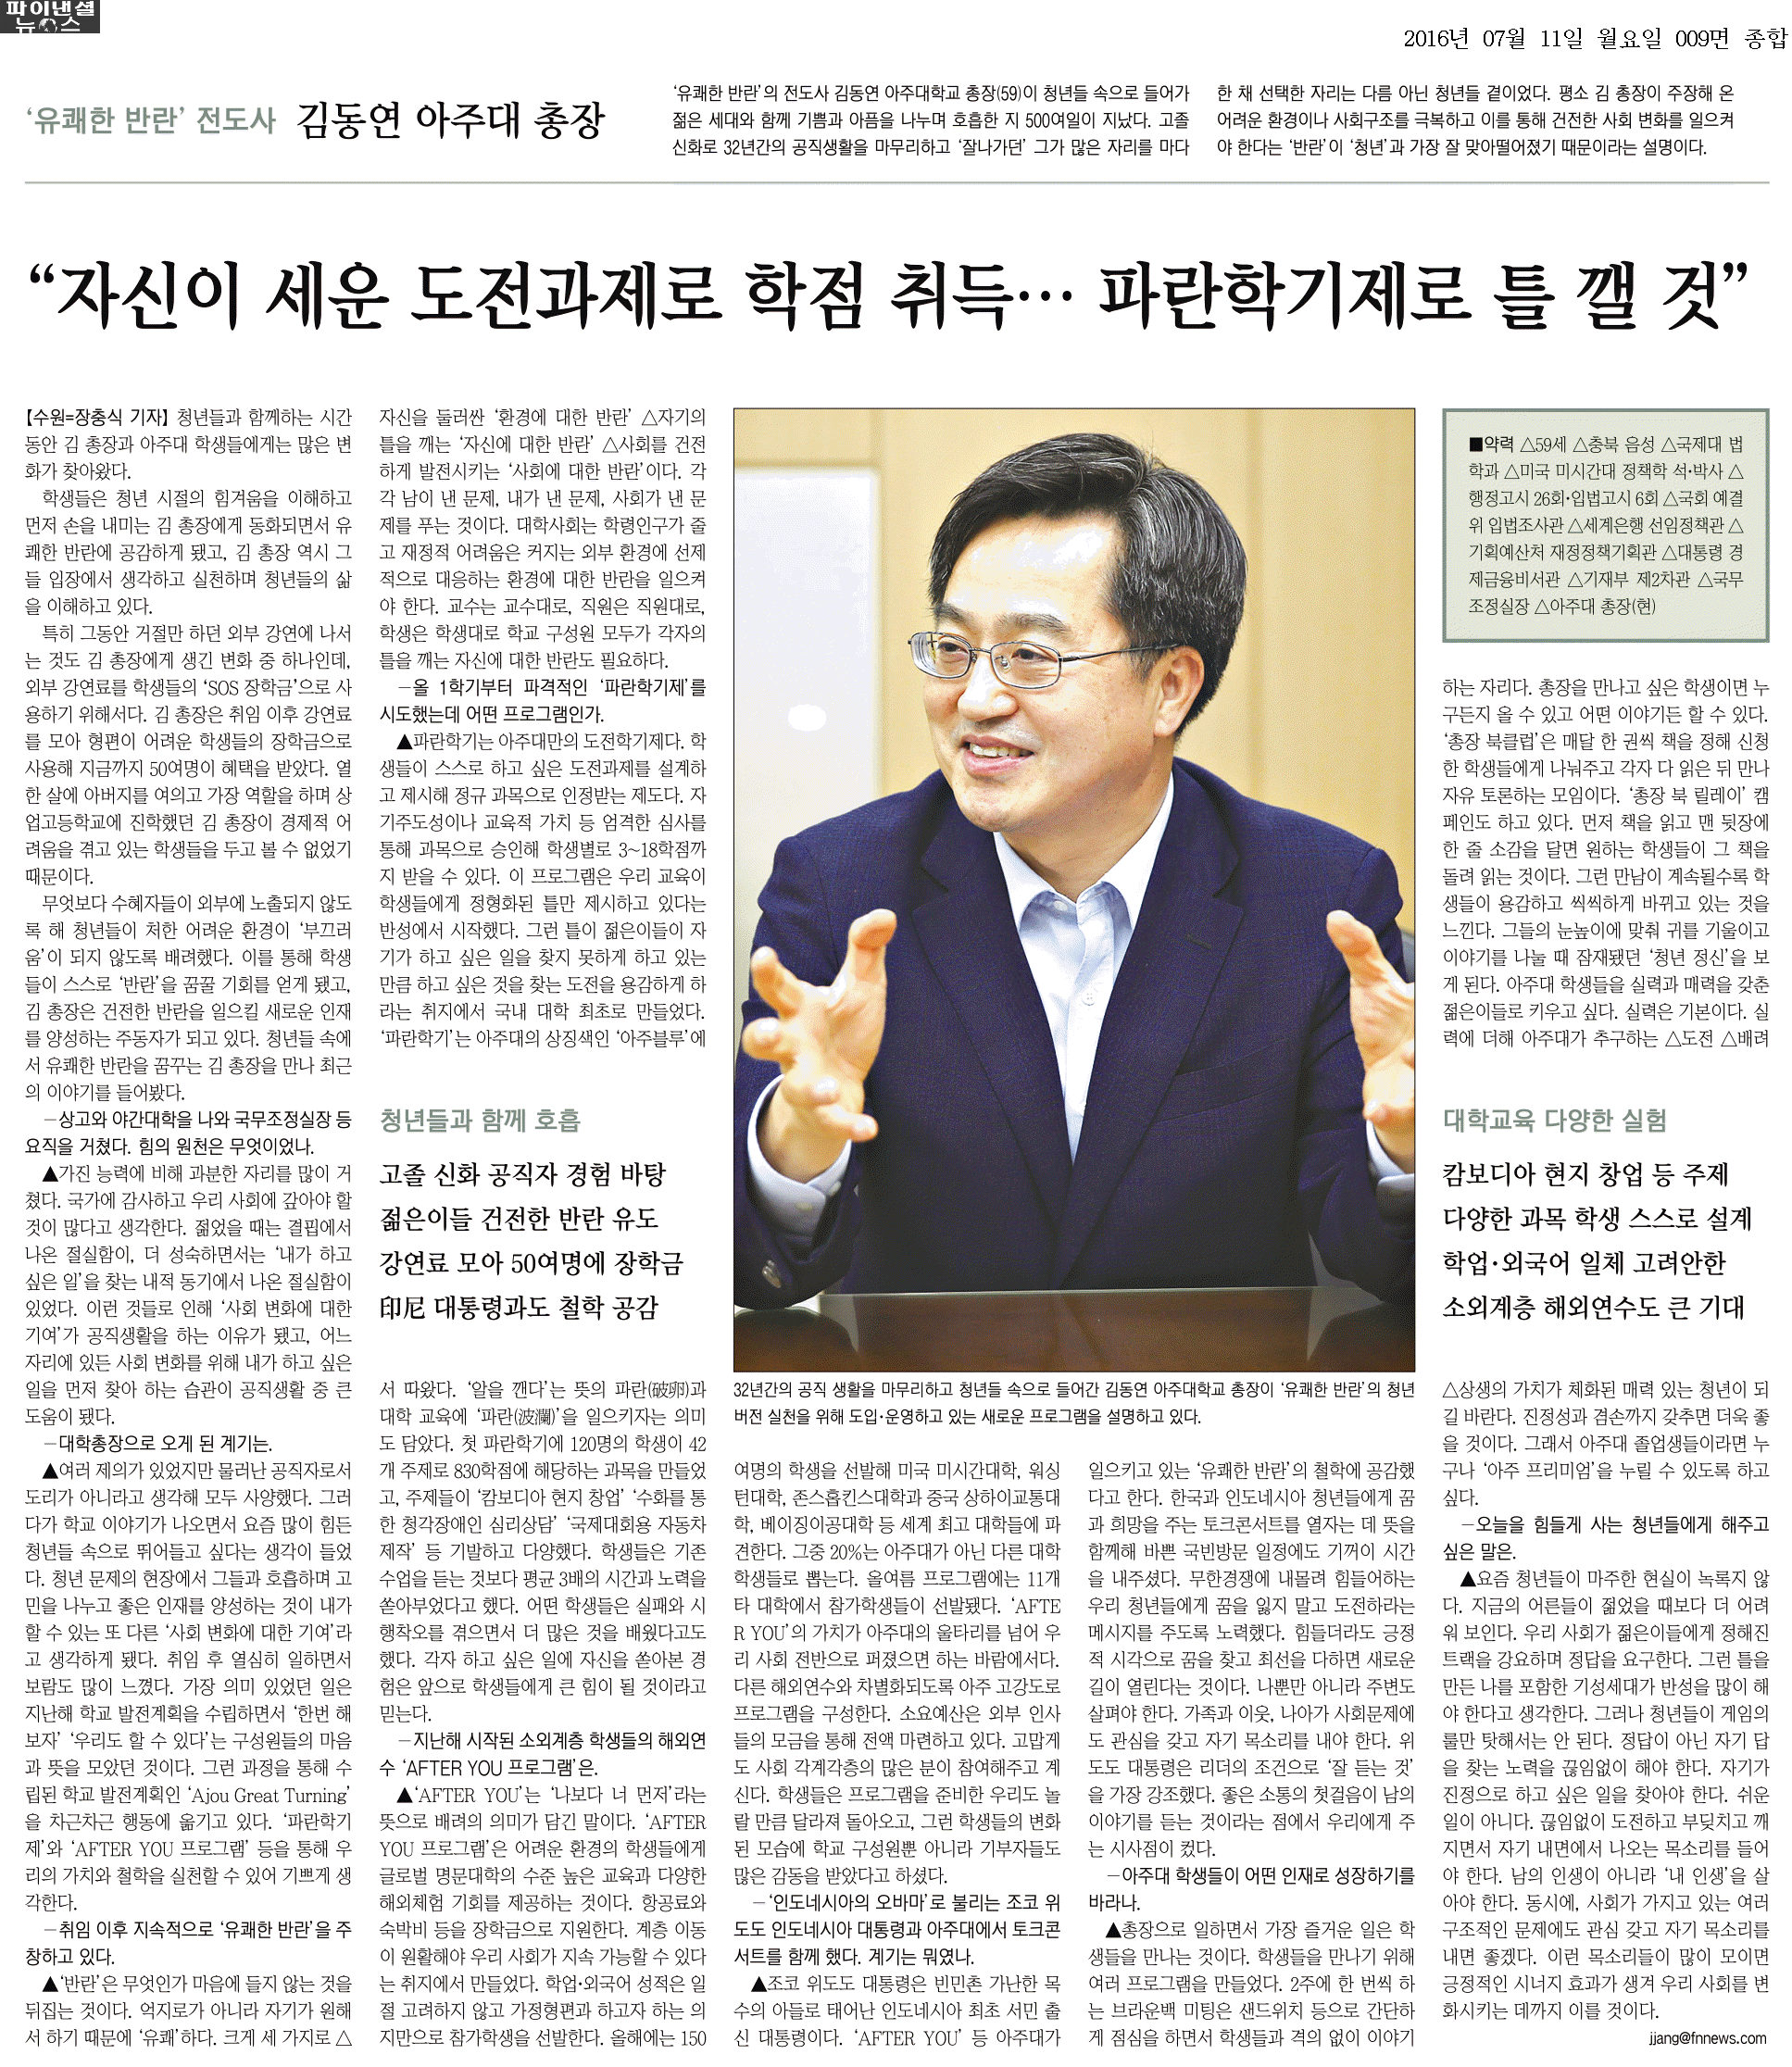 [16.07.11] 김동연 총장 인터뷰, 파이낸셜뉴스·중부일보에 실려